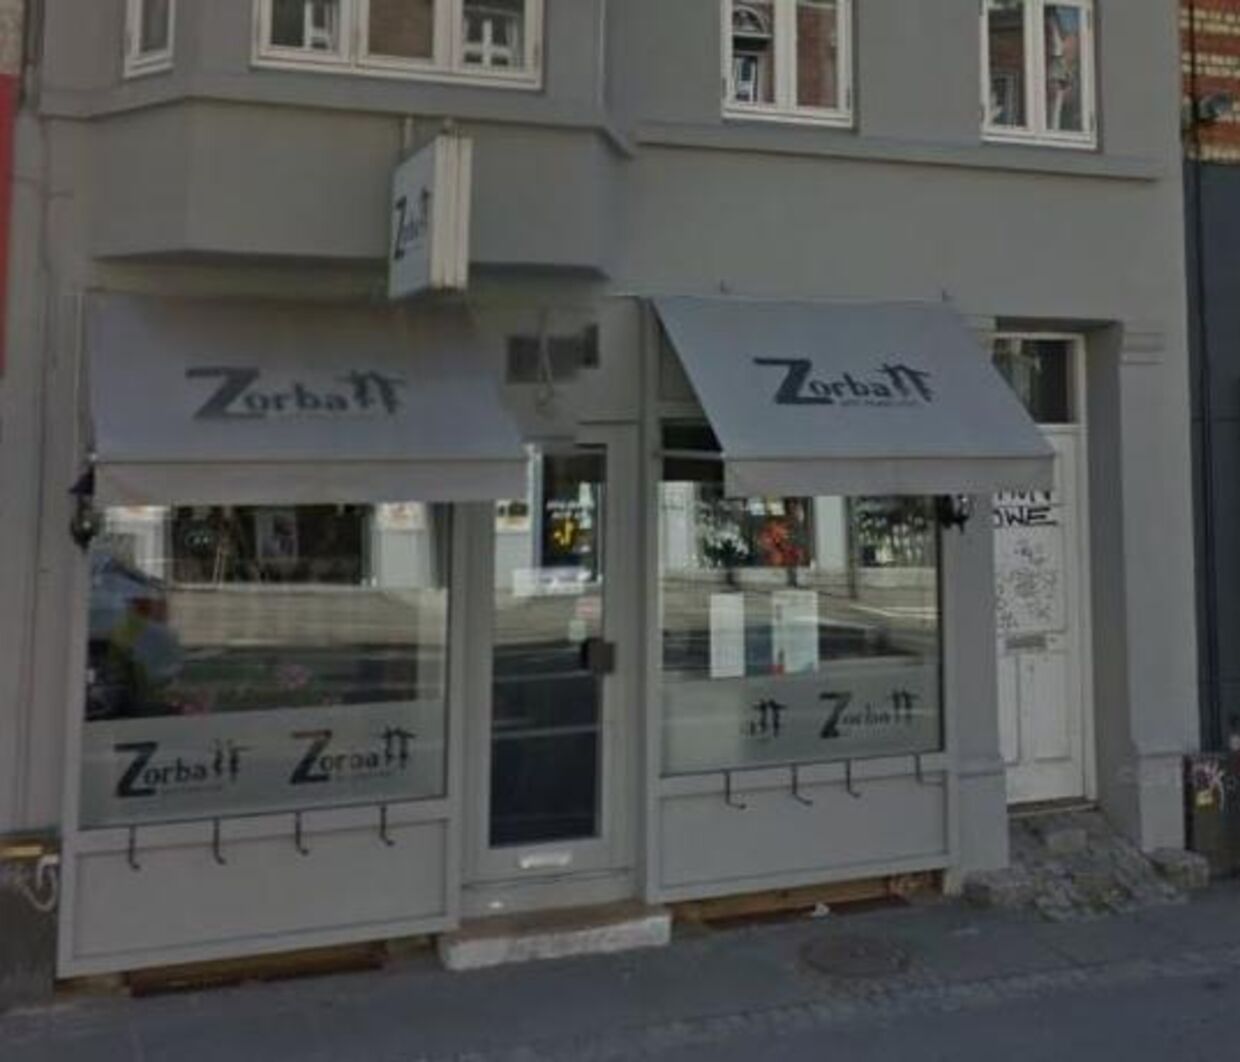 Natten til fredag var der indbrud på Restaurant Zorba i Aarhus. Ejeren tog herefter sagen i ejen hånd, og havde sine ting igen senere samme dag.